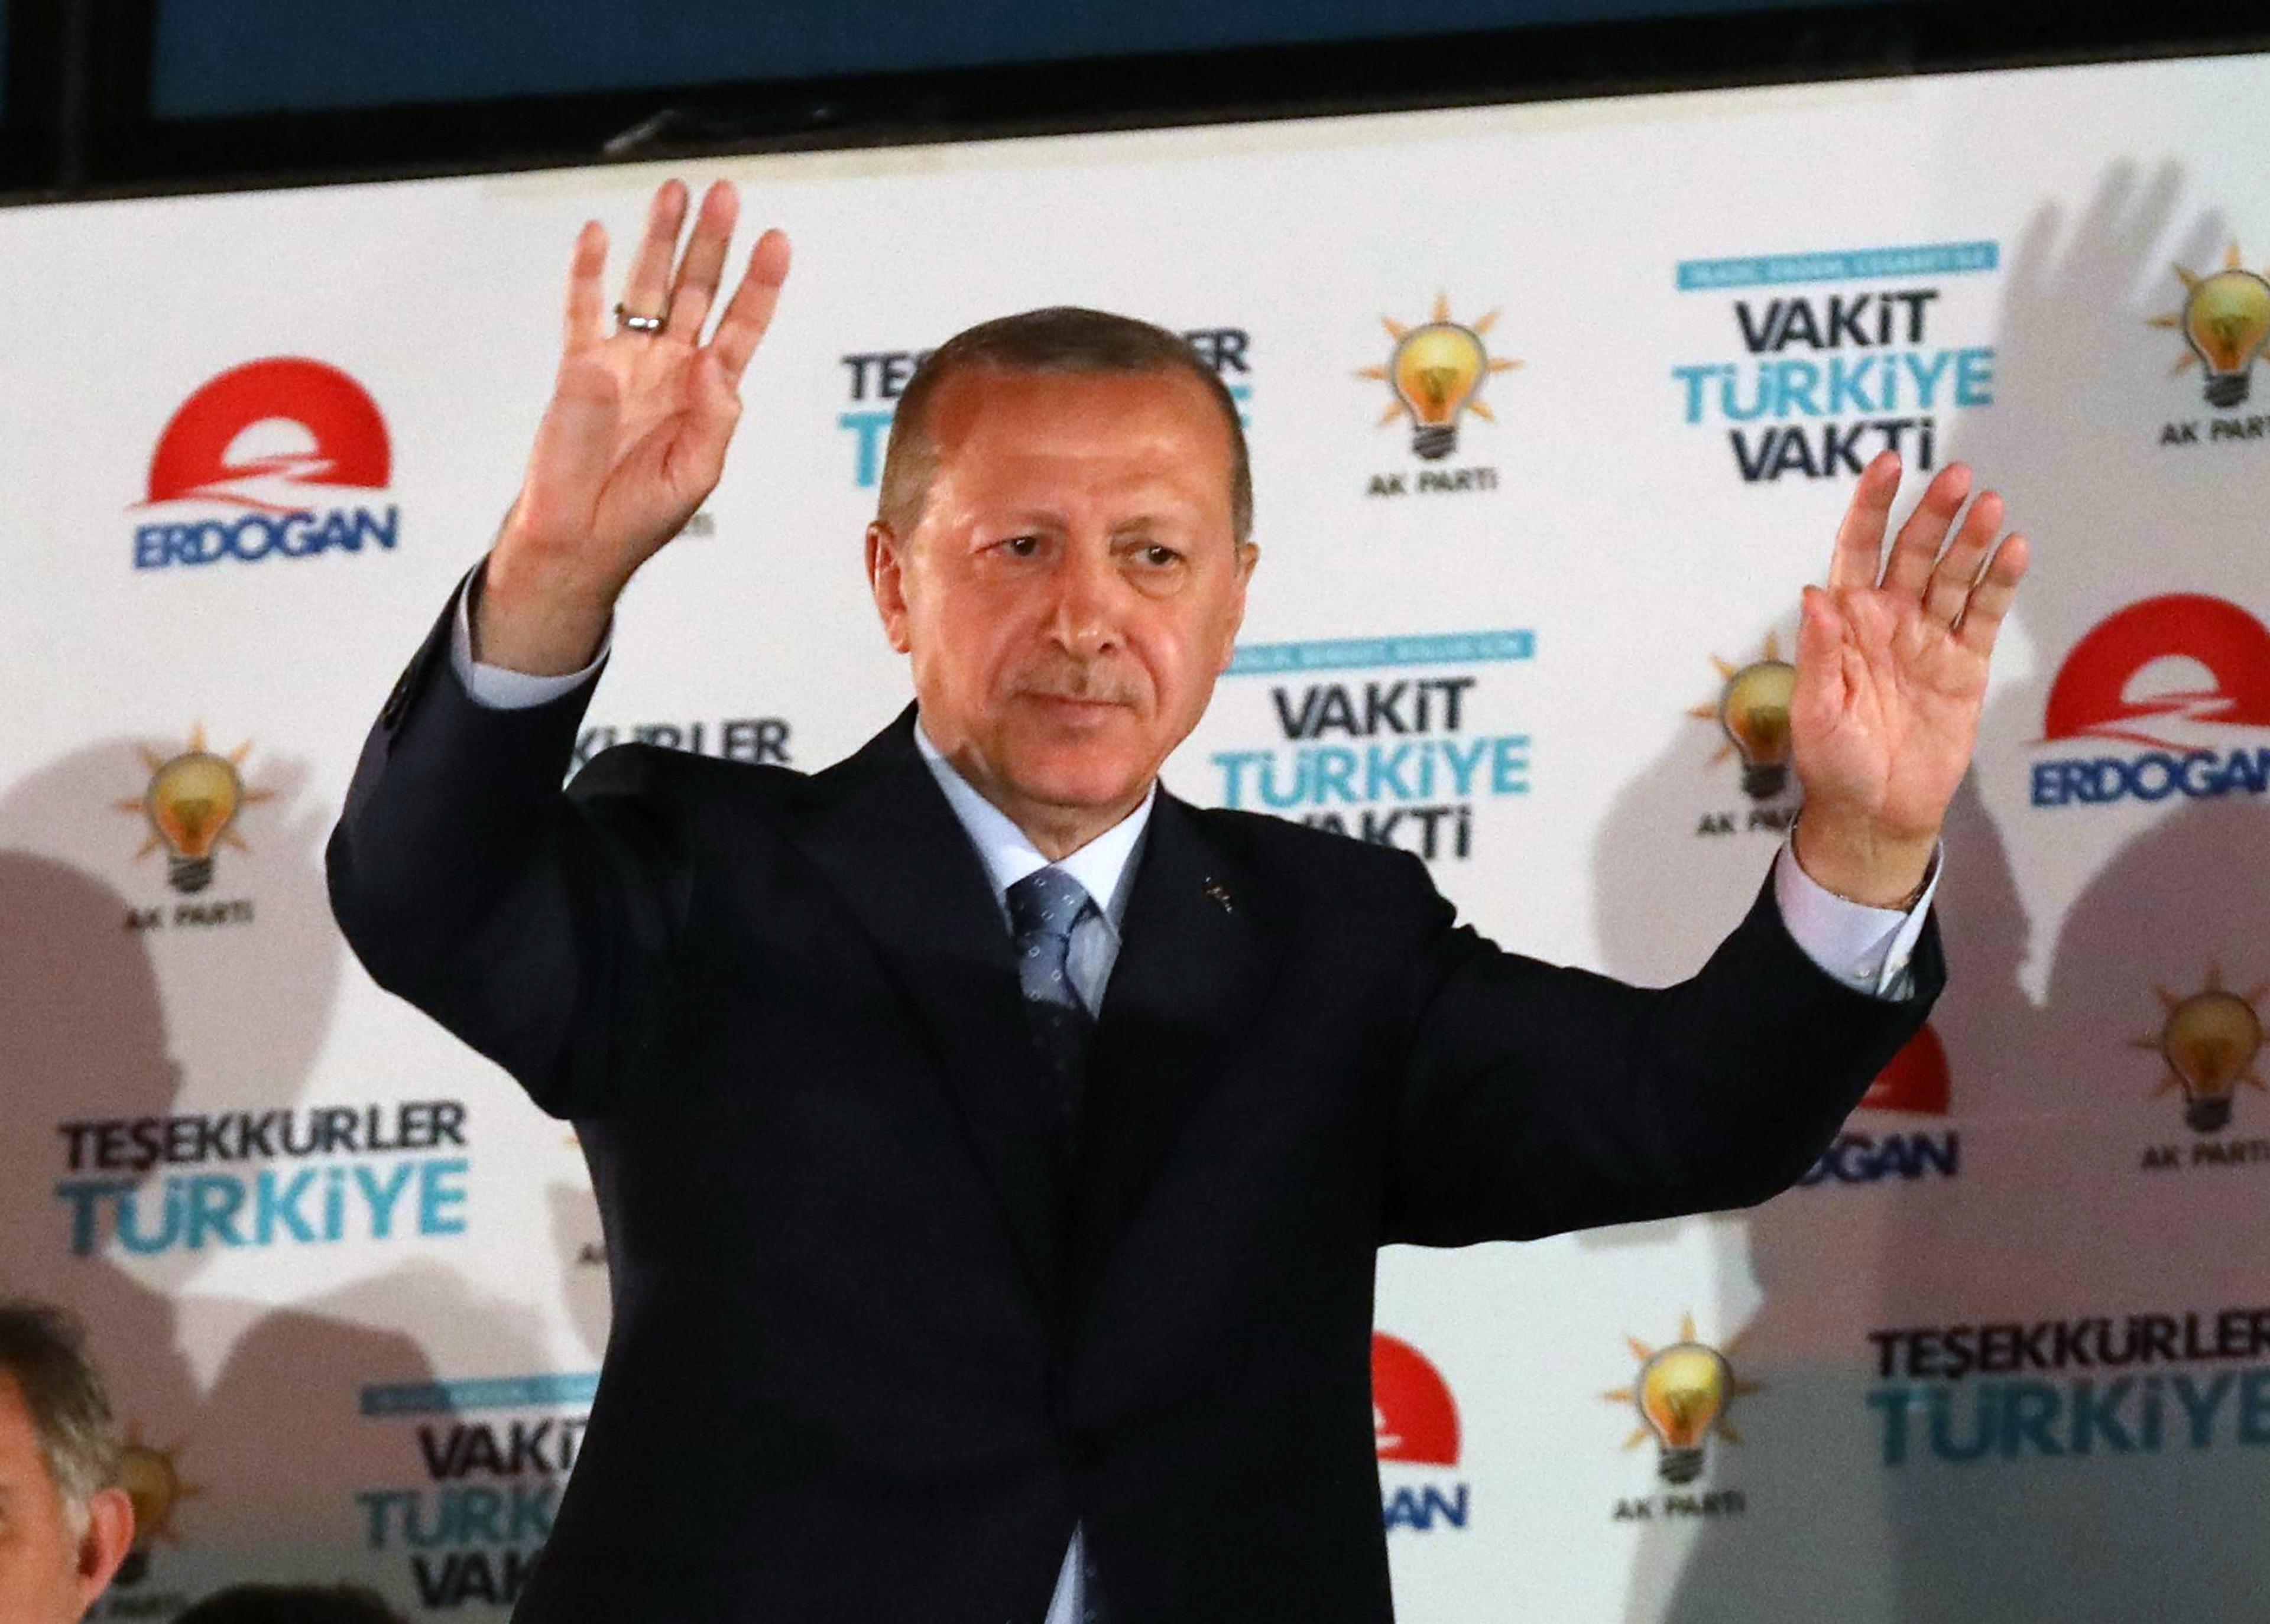 Erdoan je pobjednik izbora u Turskoj, imat će apsolutnu moć